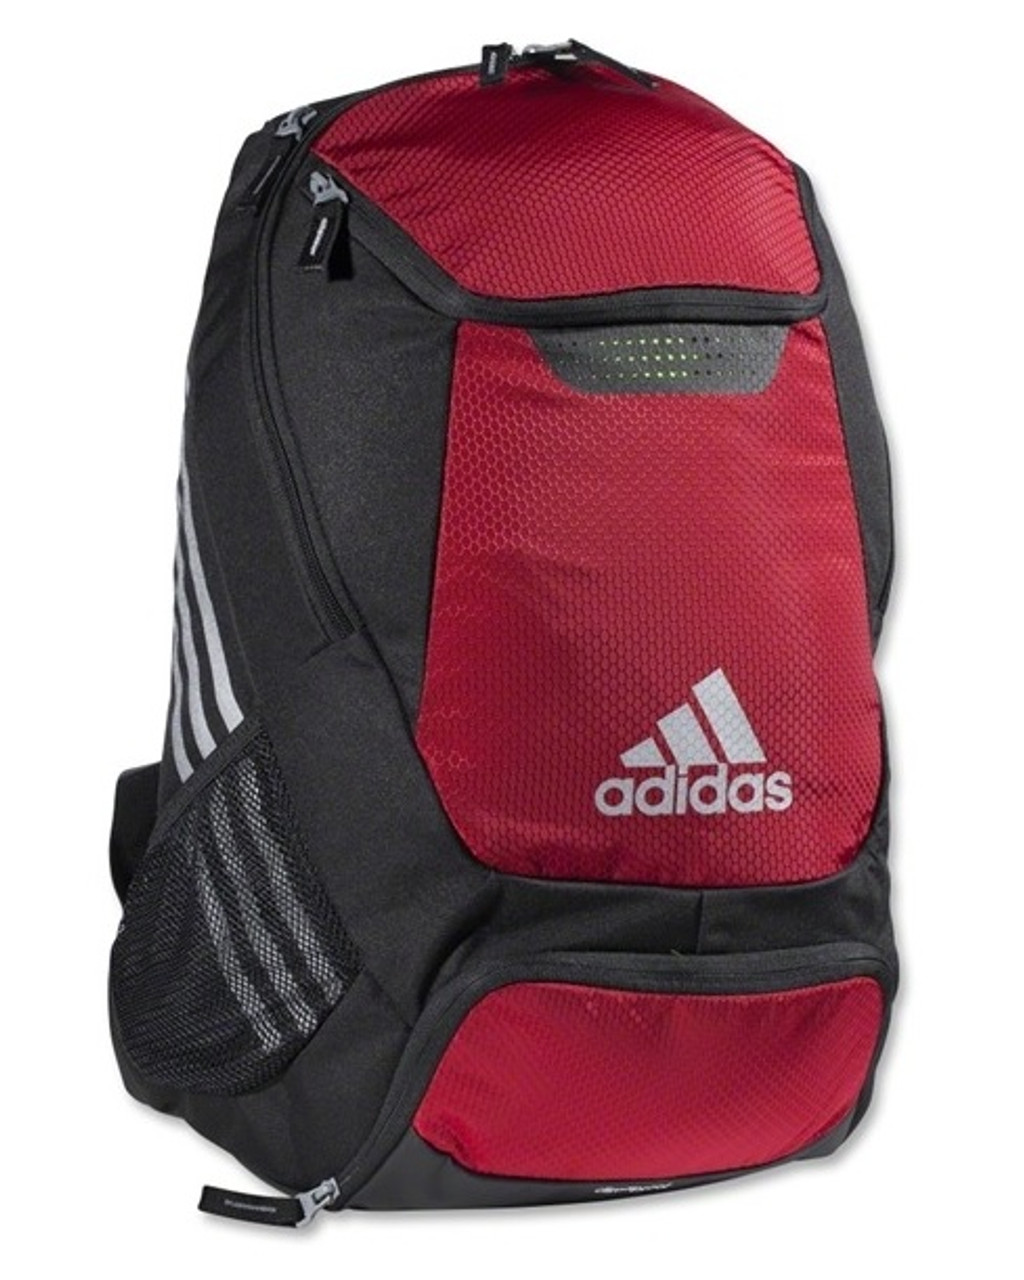 adidas Stadium Team Backpack - Red 